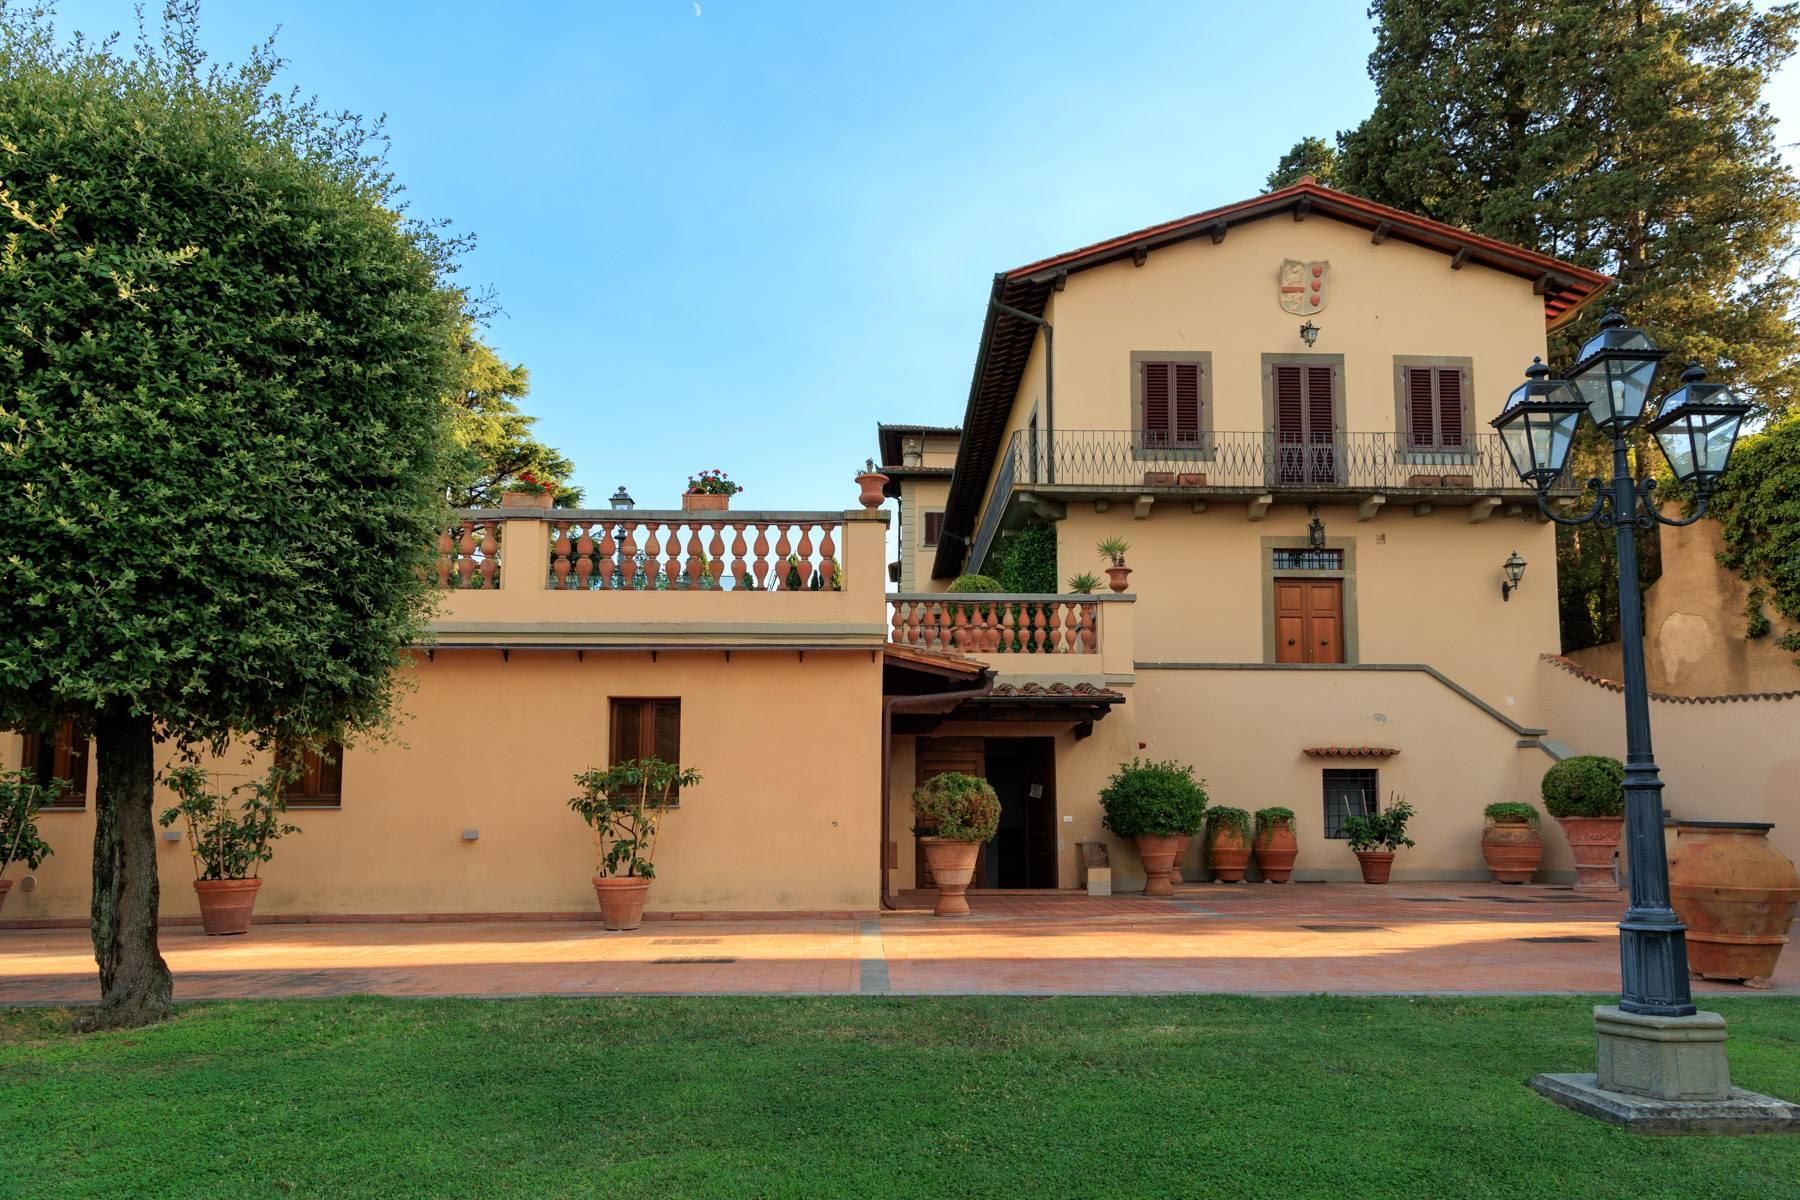 Wohnung in einer historischen Villa auf den Hügeln von Carmignano - 20